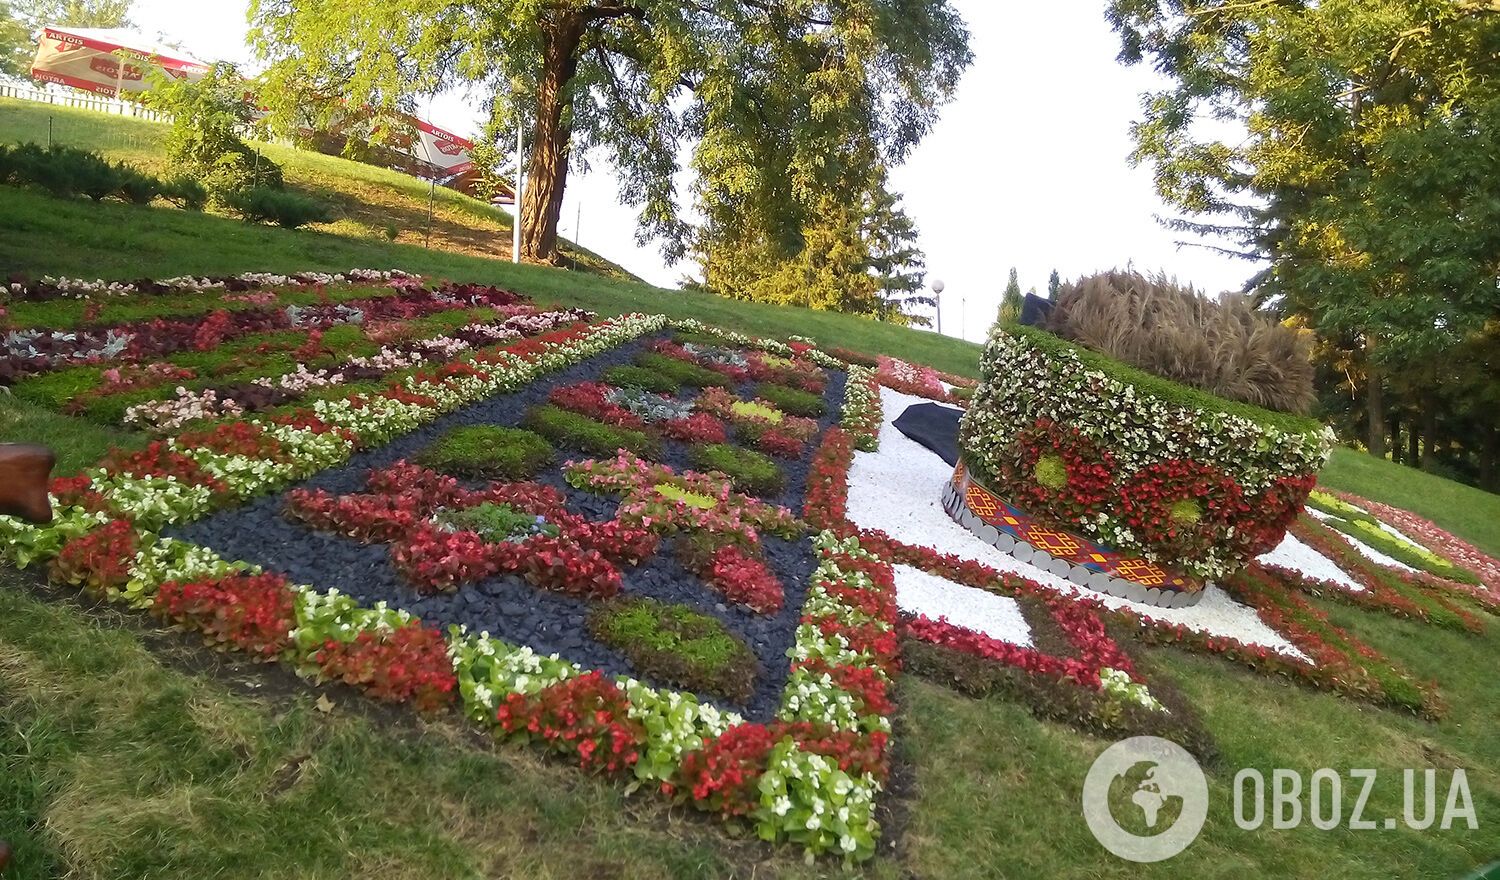 Виставка квітів у Києві: тарілка борщу і гігантські вареники